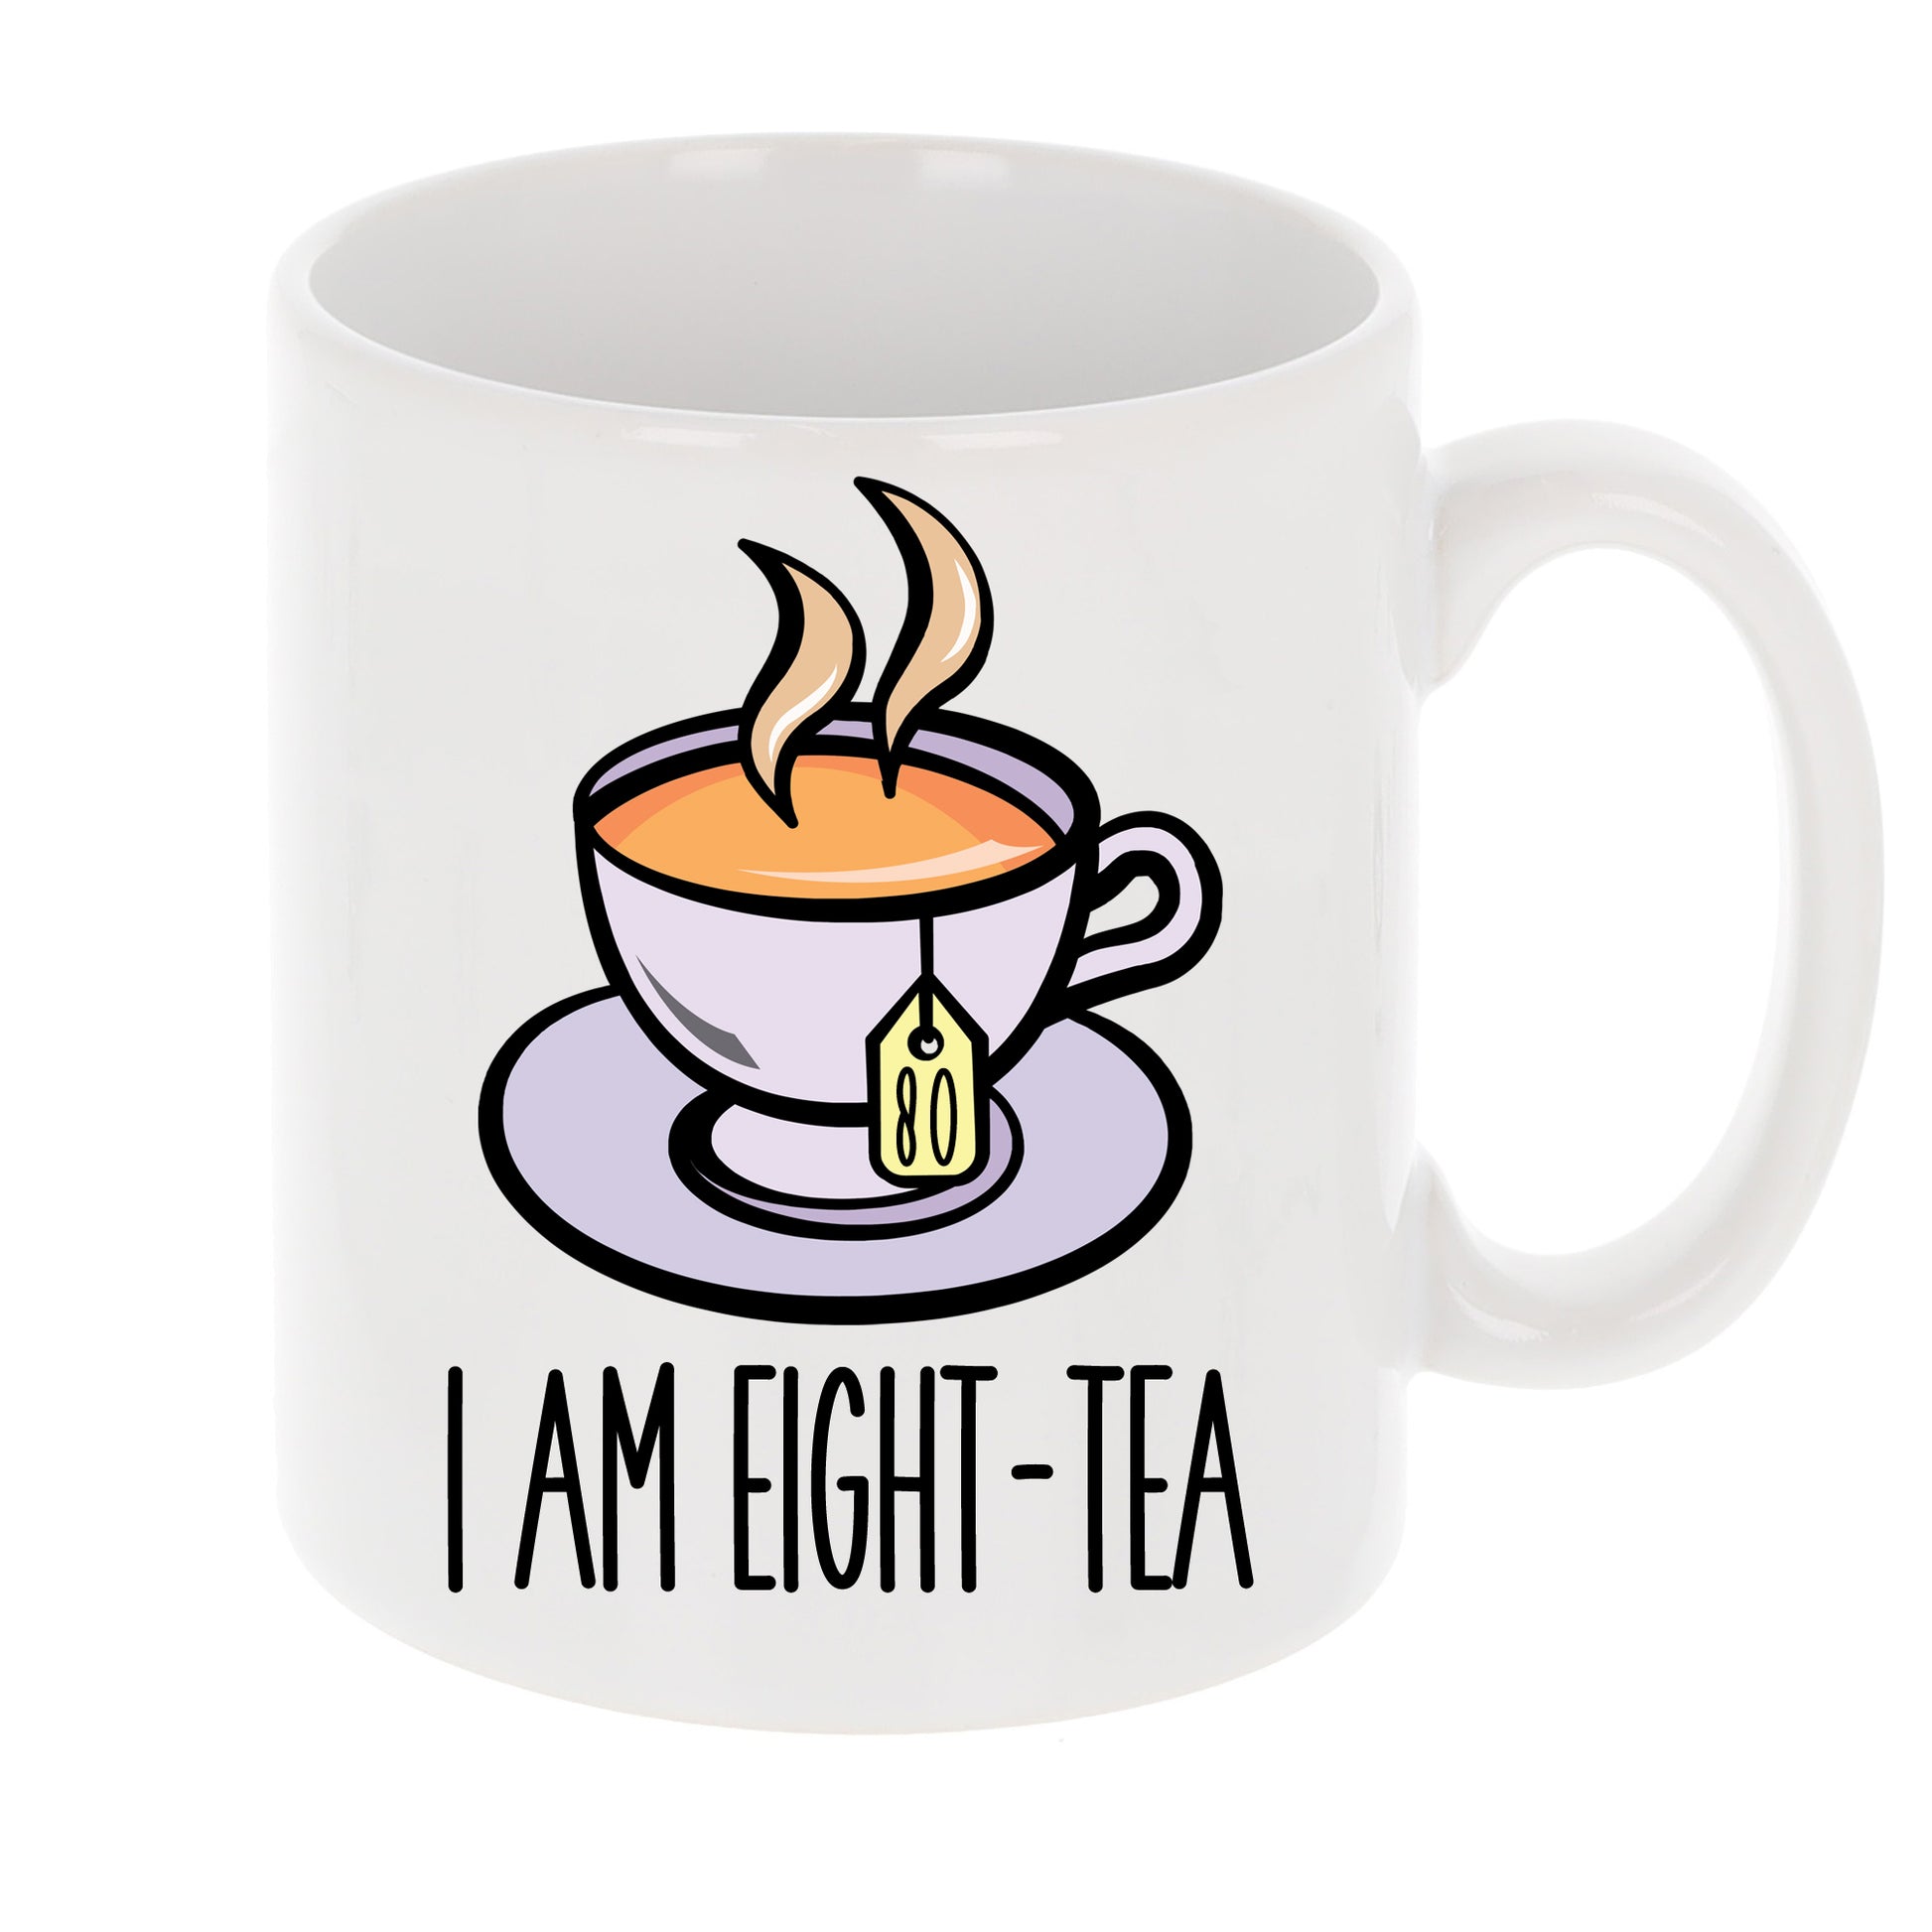 I Am Eighty-Tea Funny 80th Birthday Mug Gift for Tea Lovers  - Always Looking Good -   